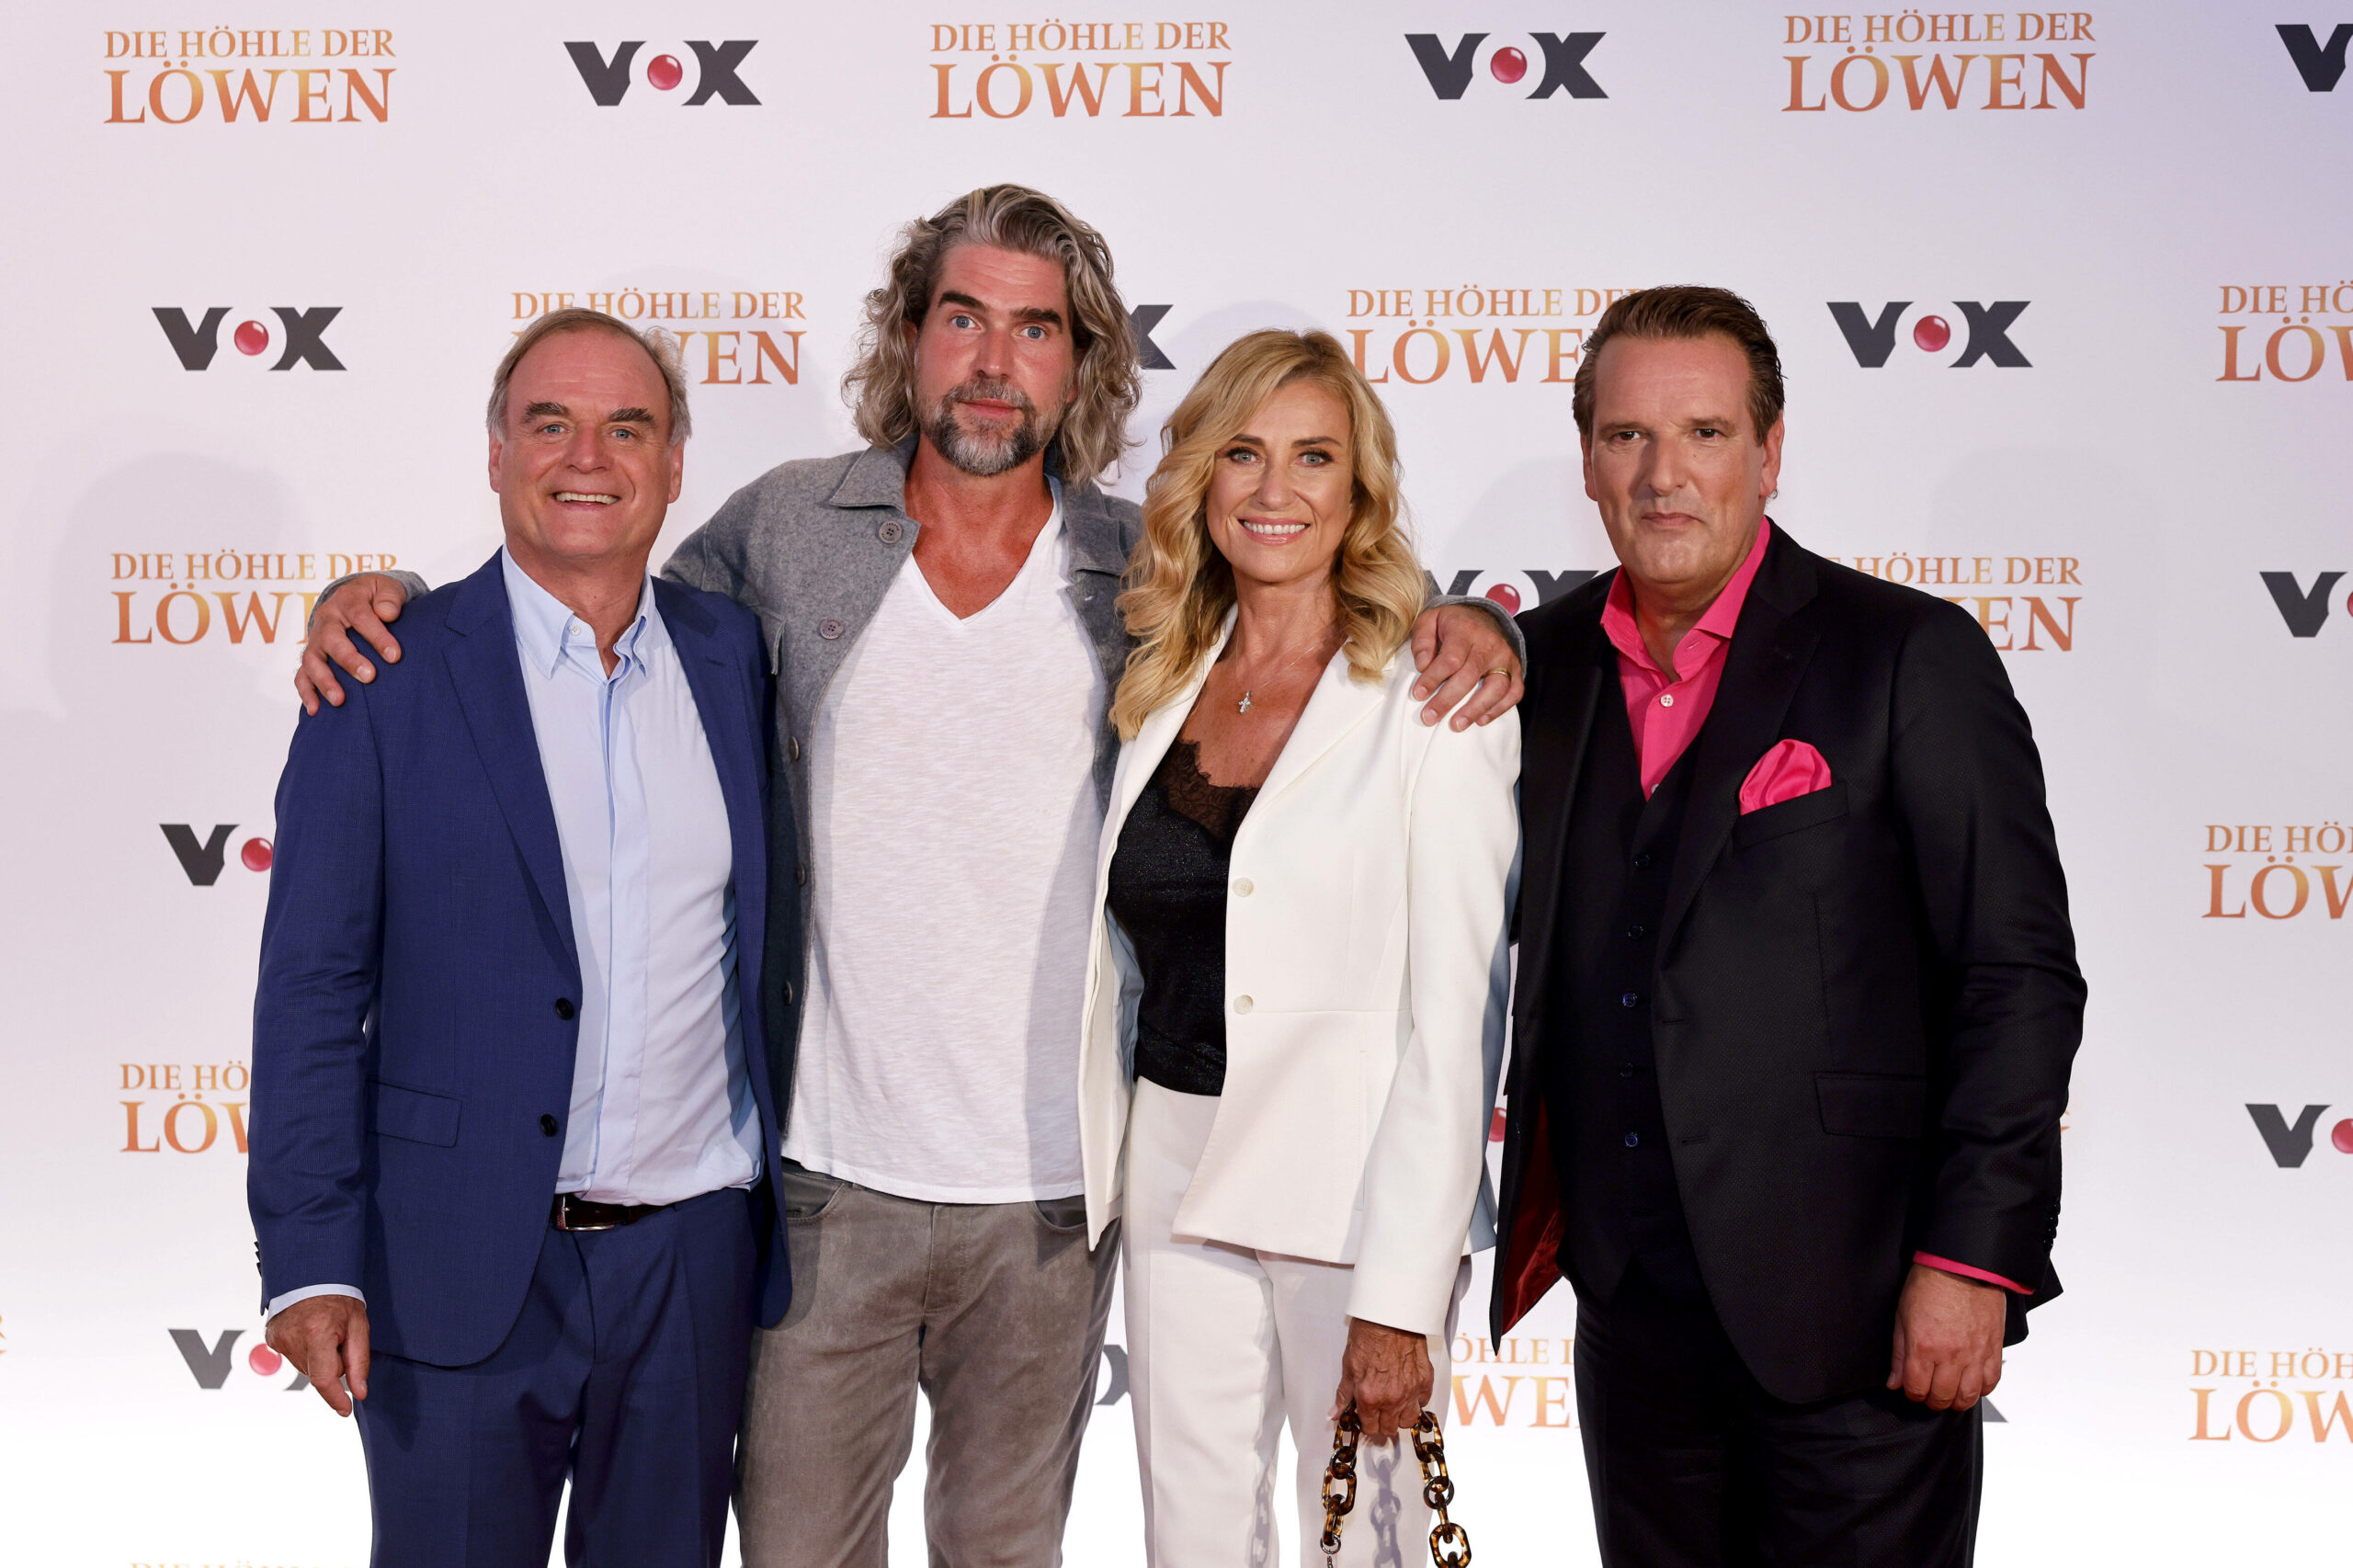 In diesem Jahr standen Georg Kofler (v.l.n.r.), Nils Glagau, Dagmar Wöhrl und Ralf Dümmel noch gemeinsam für Vox vor der Kamera.